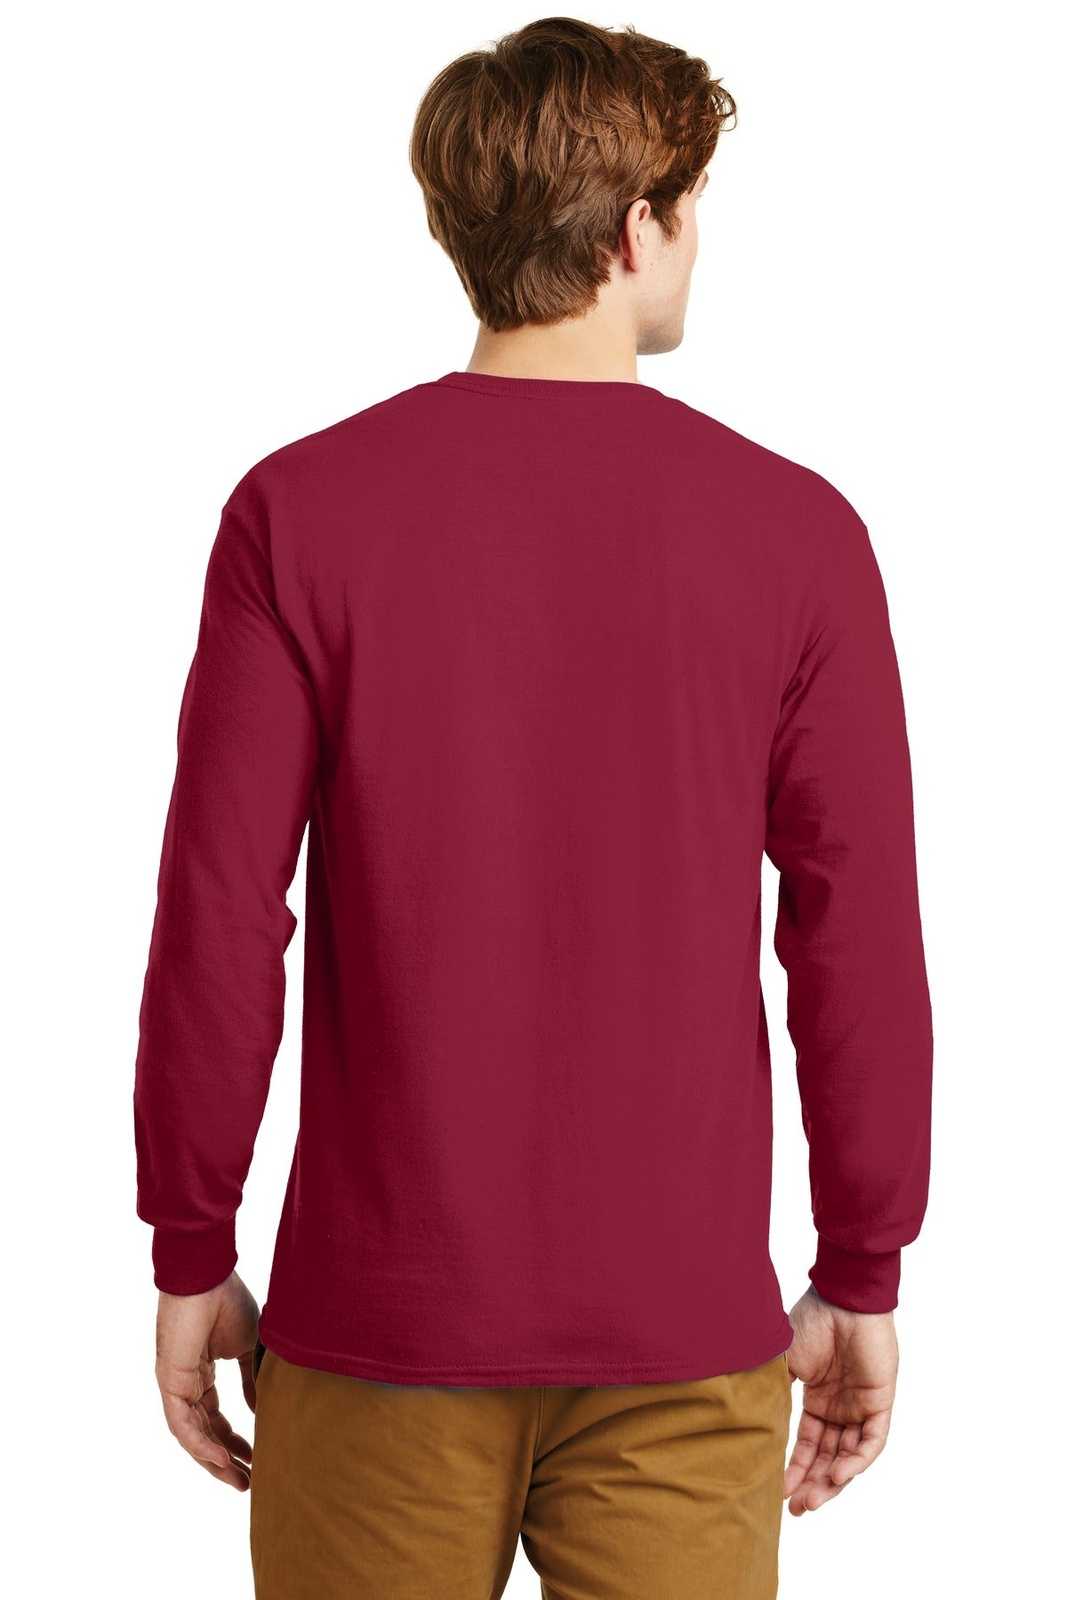 Gildan G2400 Ultra Cotton 100% Cotton Long Sleeve T-Shirt - Cardinal Red - HIT a Double